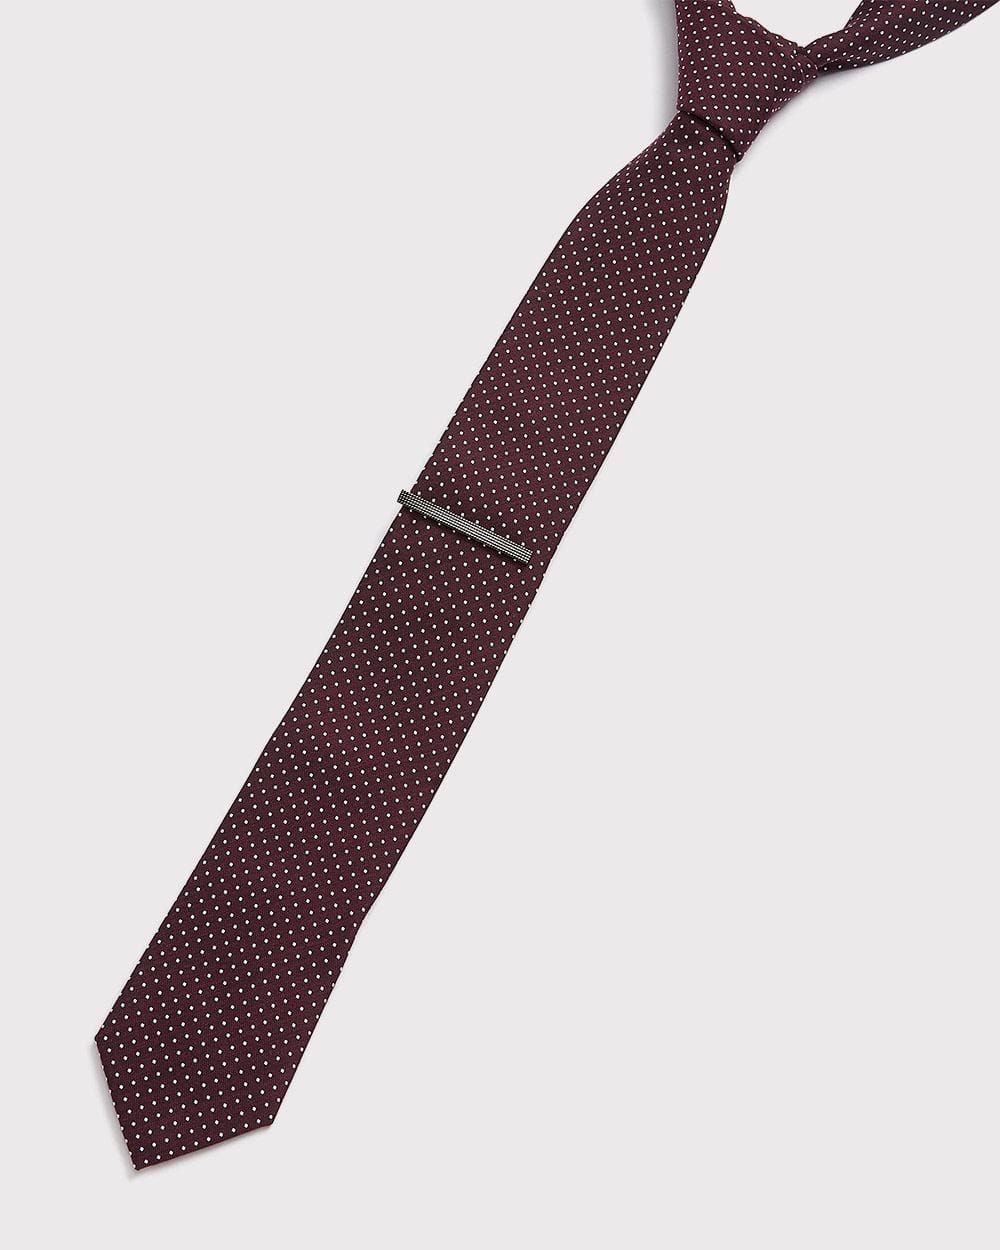 HAWSON Pince à Cravate 3,8 cm pour Homme Cadeau pour Cravate Fine